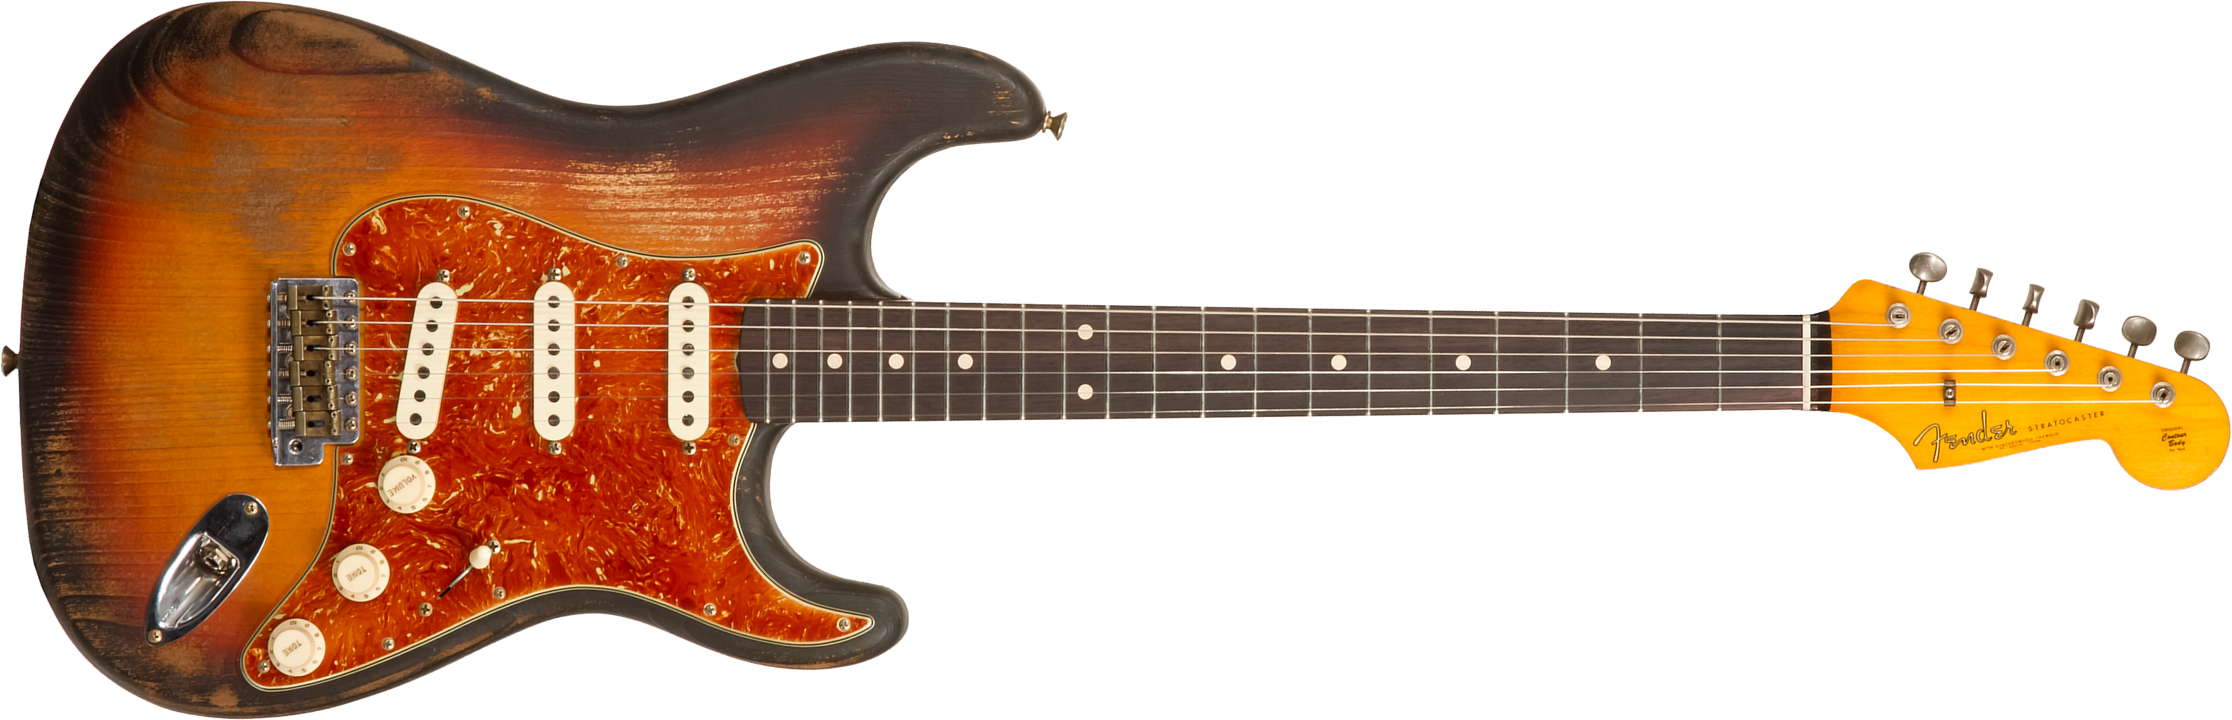 Fender Custom Shop Strat Sandblasted Masterbuilt P.walker #r117542 - Heavy Relic 3-color Sunburst - Guitare Électrique Forme Str - Main picture